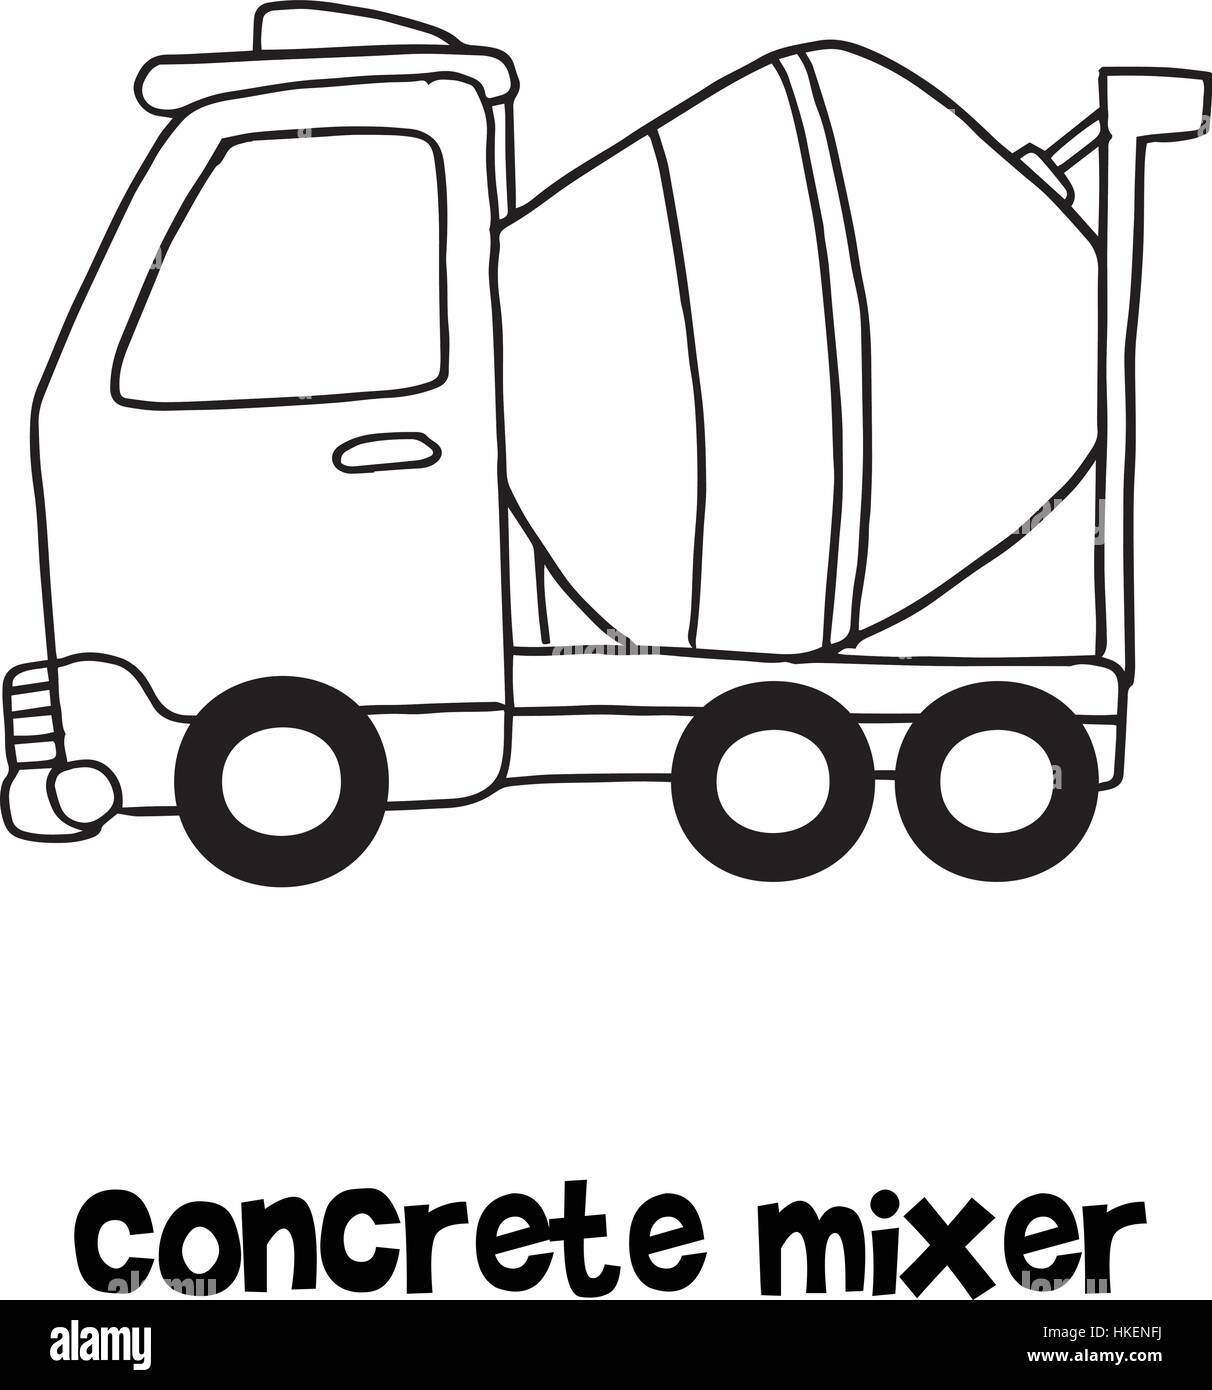 Concrete mixer cartoon hand draw Stock Vector